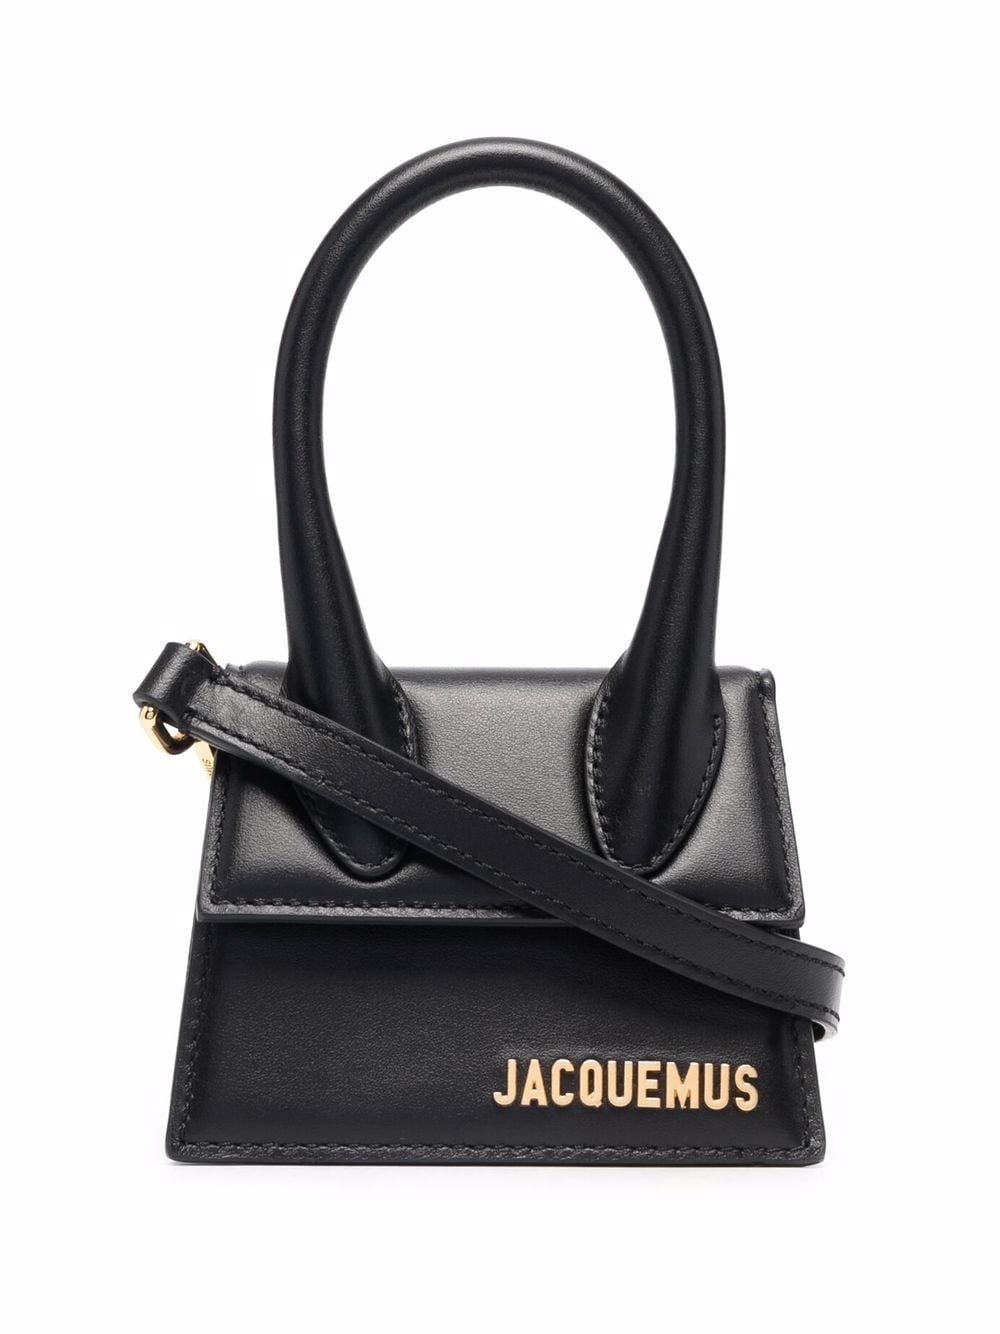 Jacquemus Le Chiquito leather tote bag - Black von Jacquemus